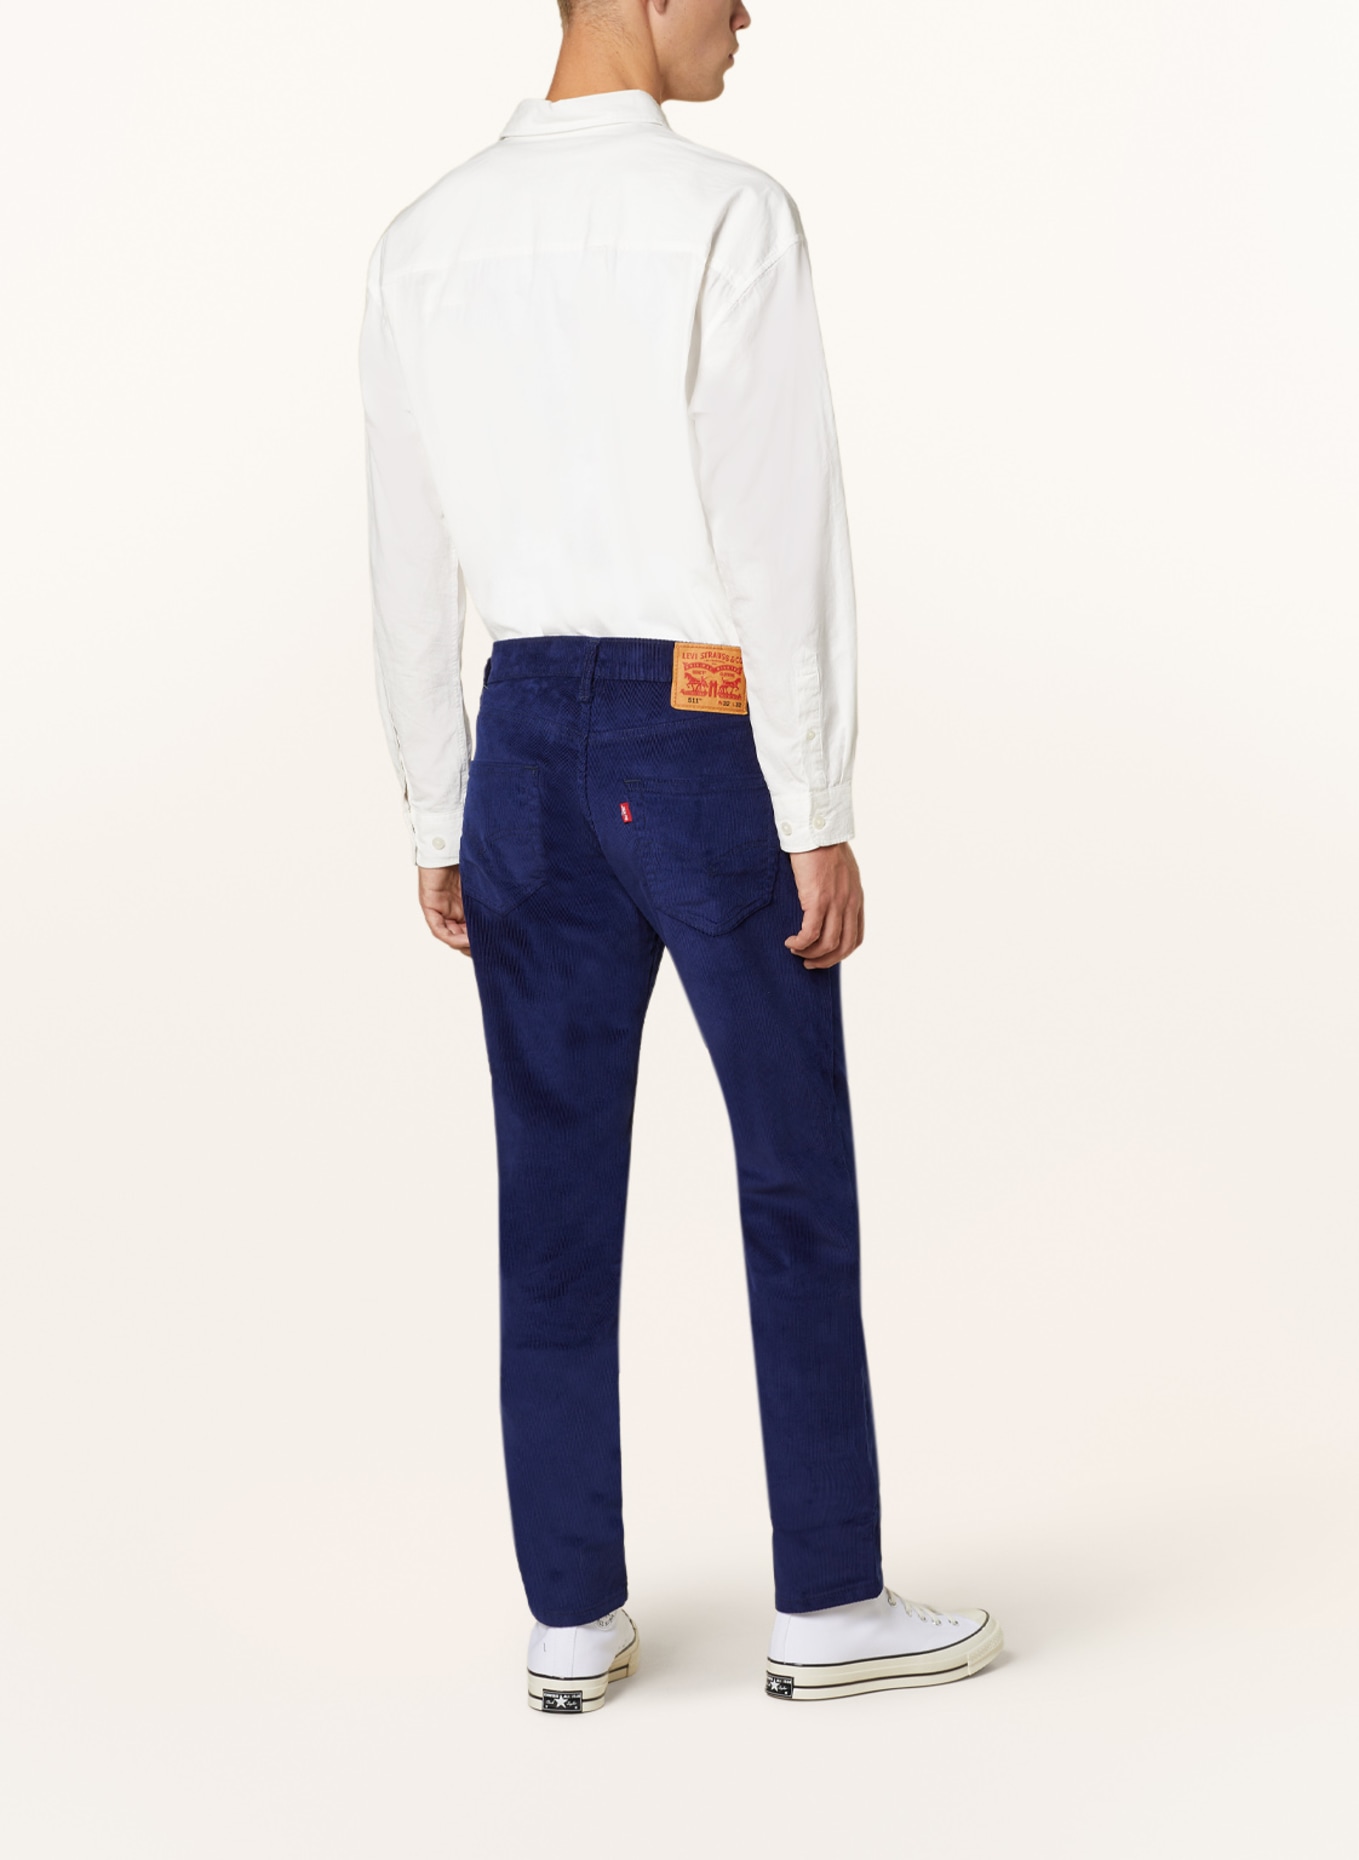 Levi's® Corduroy trousers 511 slim fit, Color: DARK BLUE (Image 3)